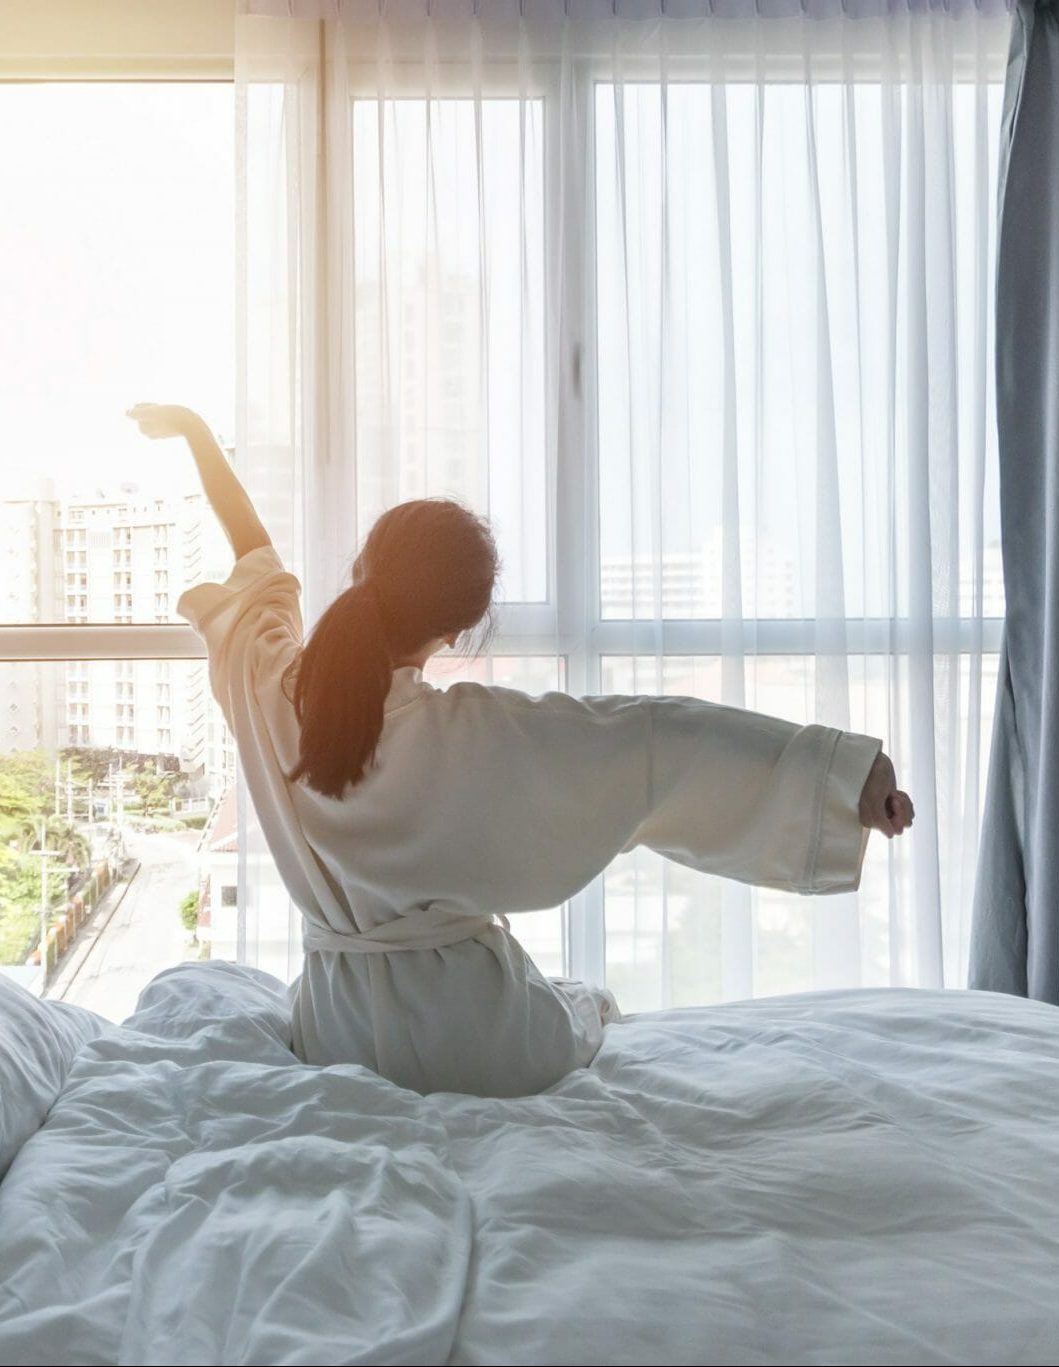 Erfurt REISEBÜRO Wache: Hotel buchen, Wellnesshotel buchen: Symbolbild: Frau im weißen Bademantel auf dem Bett vor einem großen Fenster, sie streckt sich